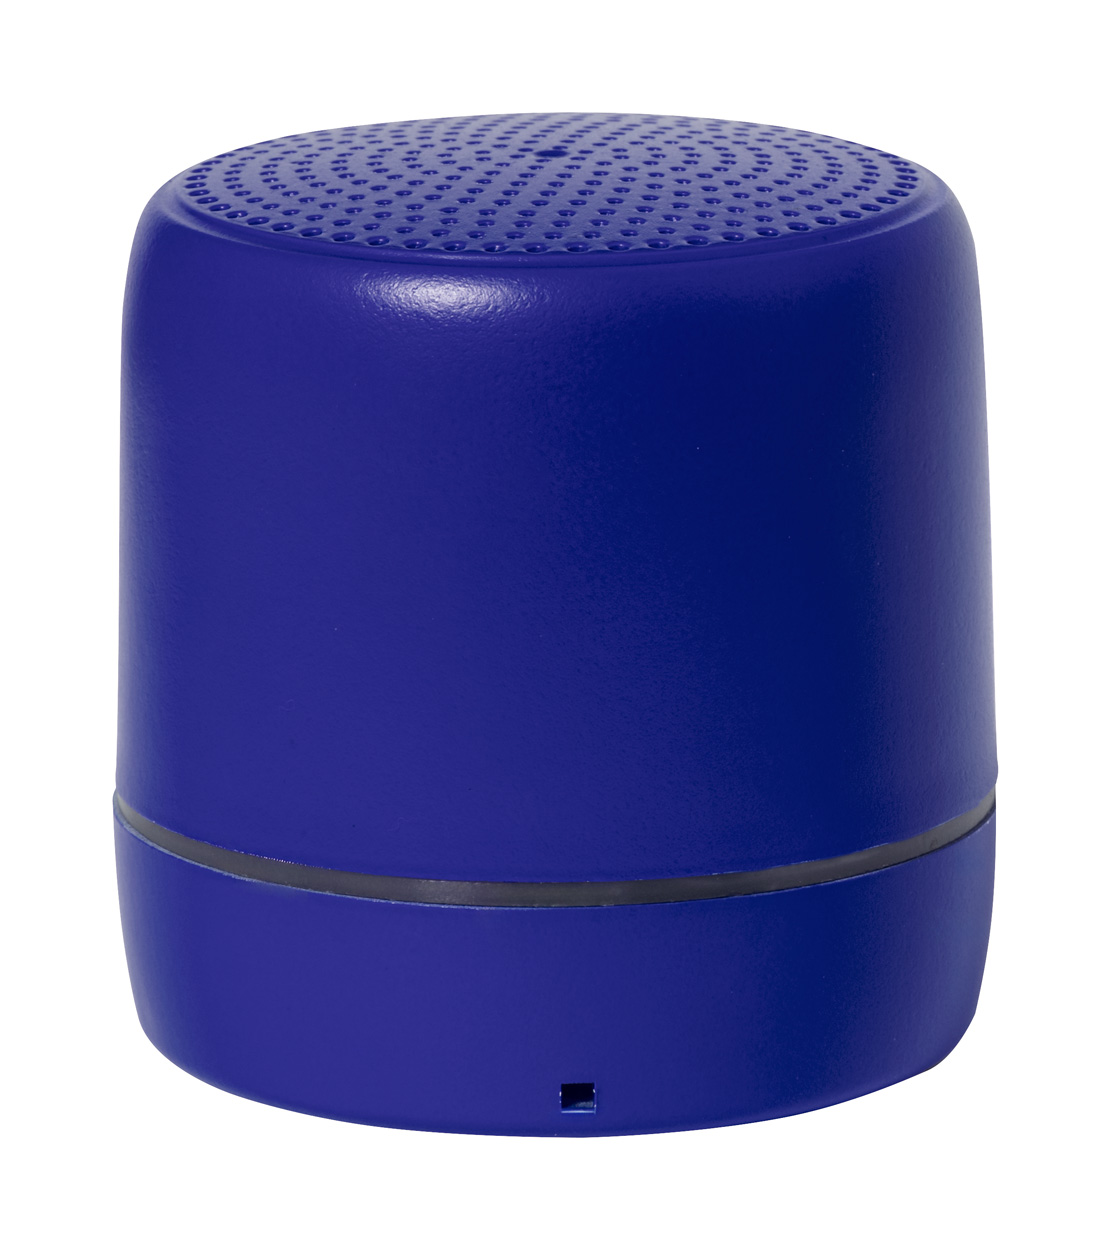 Kucher bluetooth speaker - blue